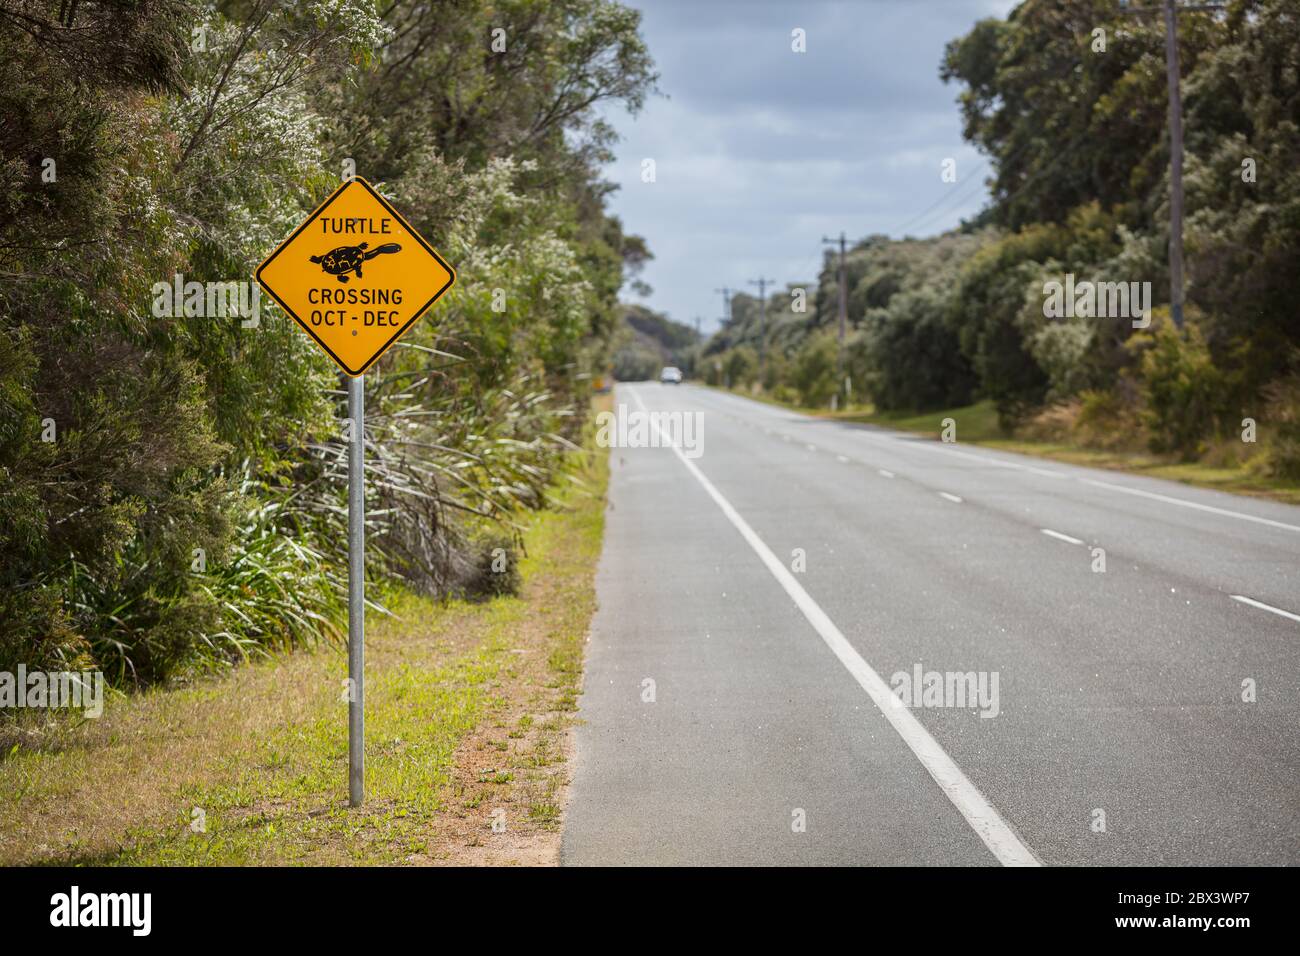 Albany Australia Occidentale 11 Novembre 2019 : Vista ravvicinata dei cartelli di avvertimento gialli stagionali che allertano gli automobilisti alla presenza delle tartarughe Foto Stock